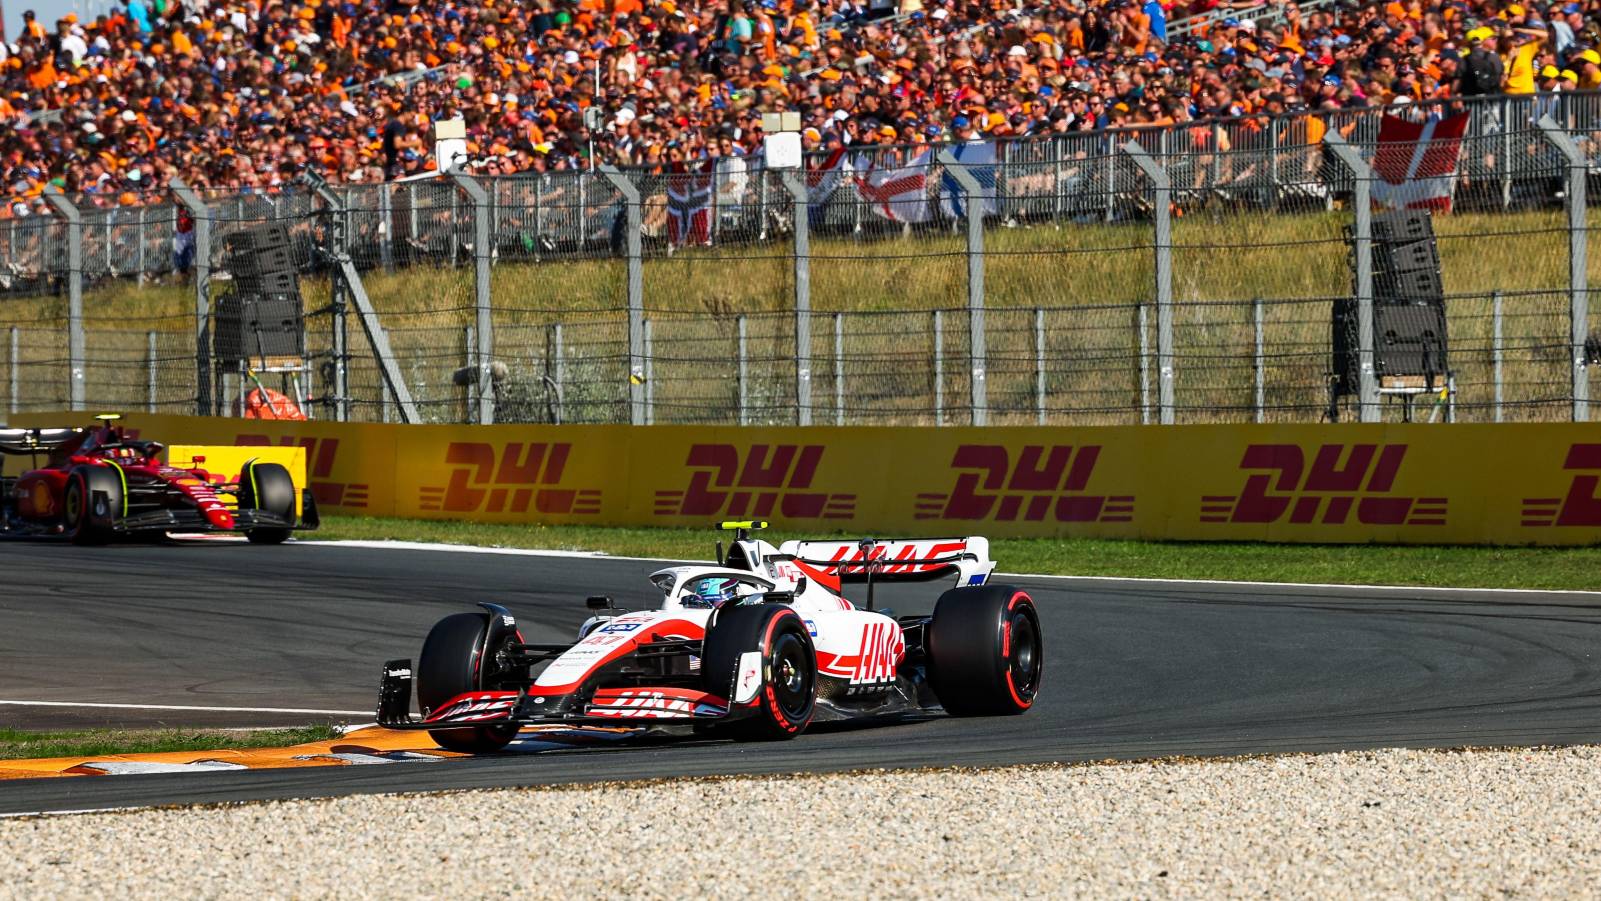 Mick Schumacher's Haas ahead of a Ferrari. Zandvoort September 2022.